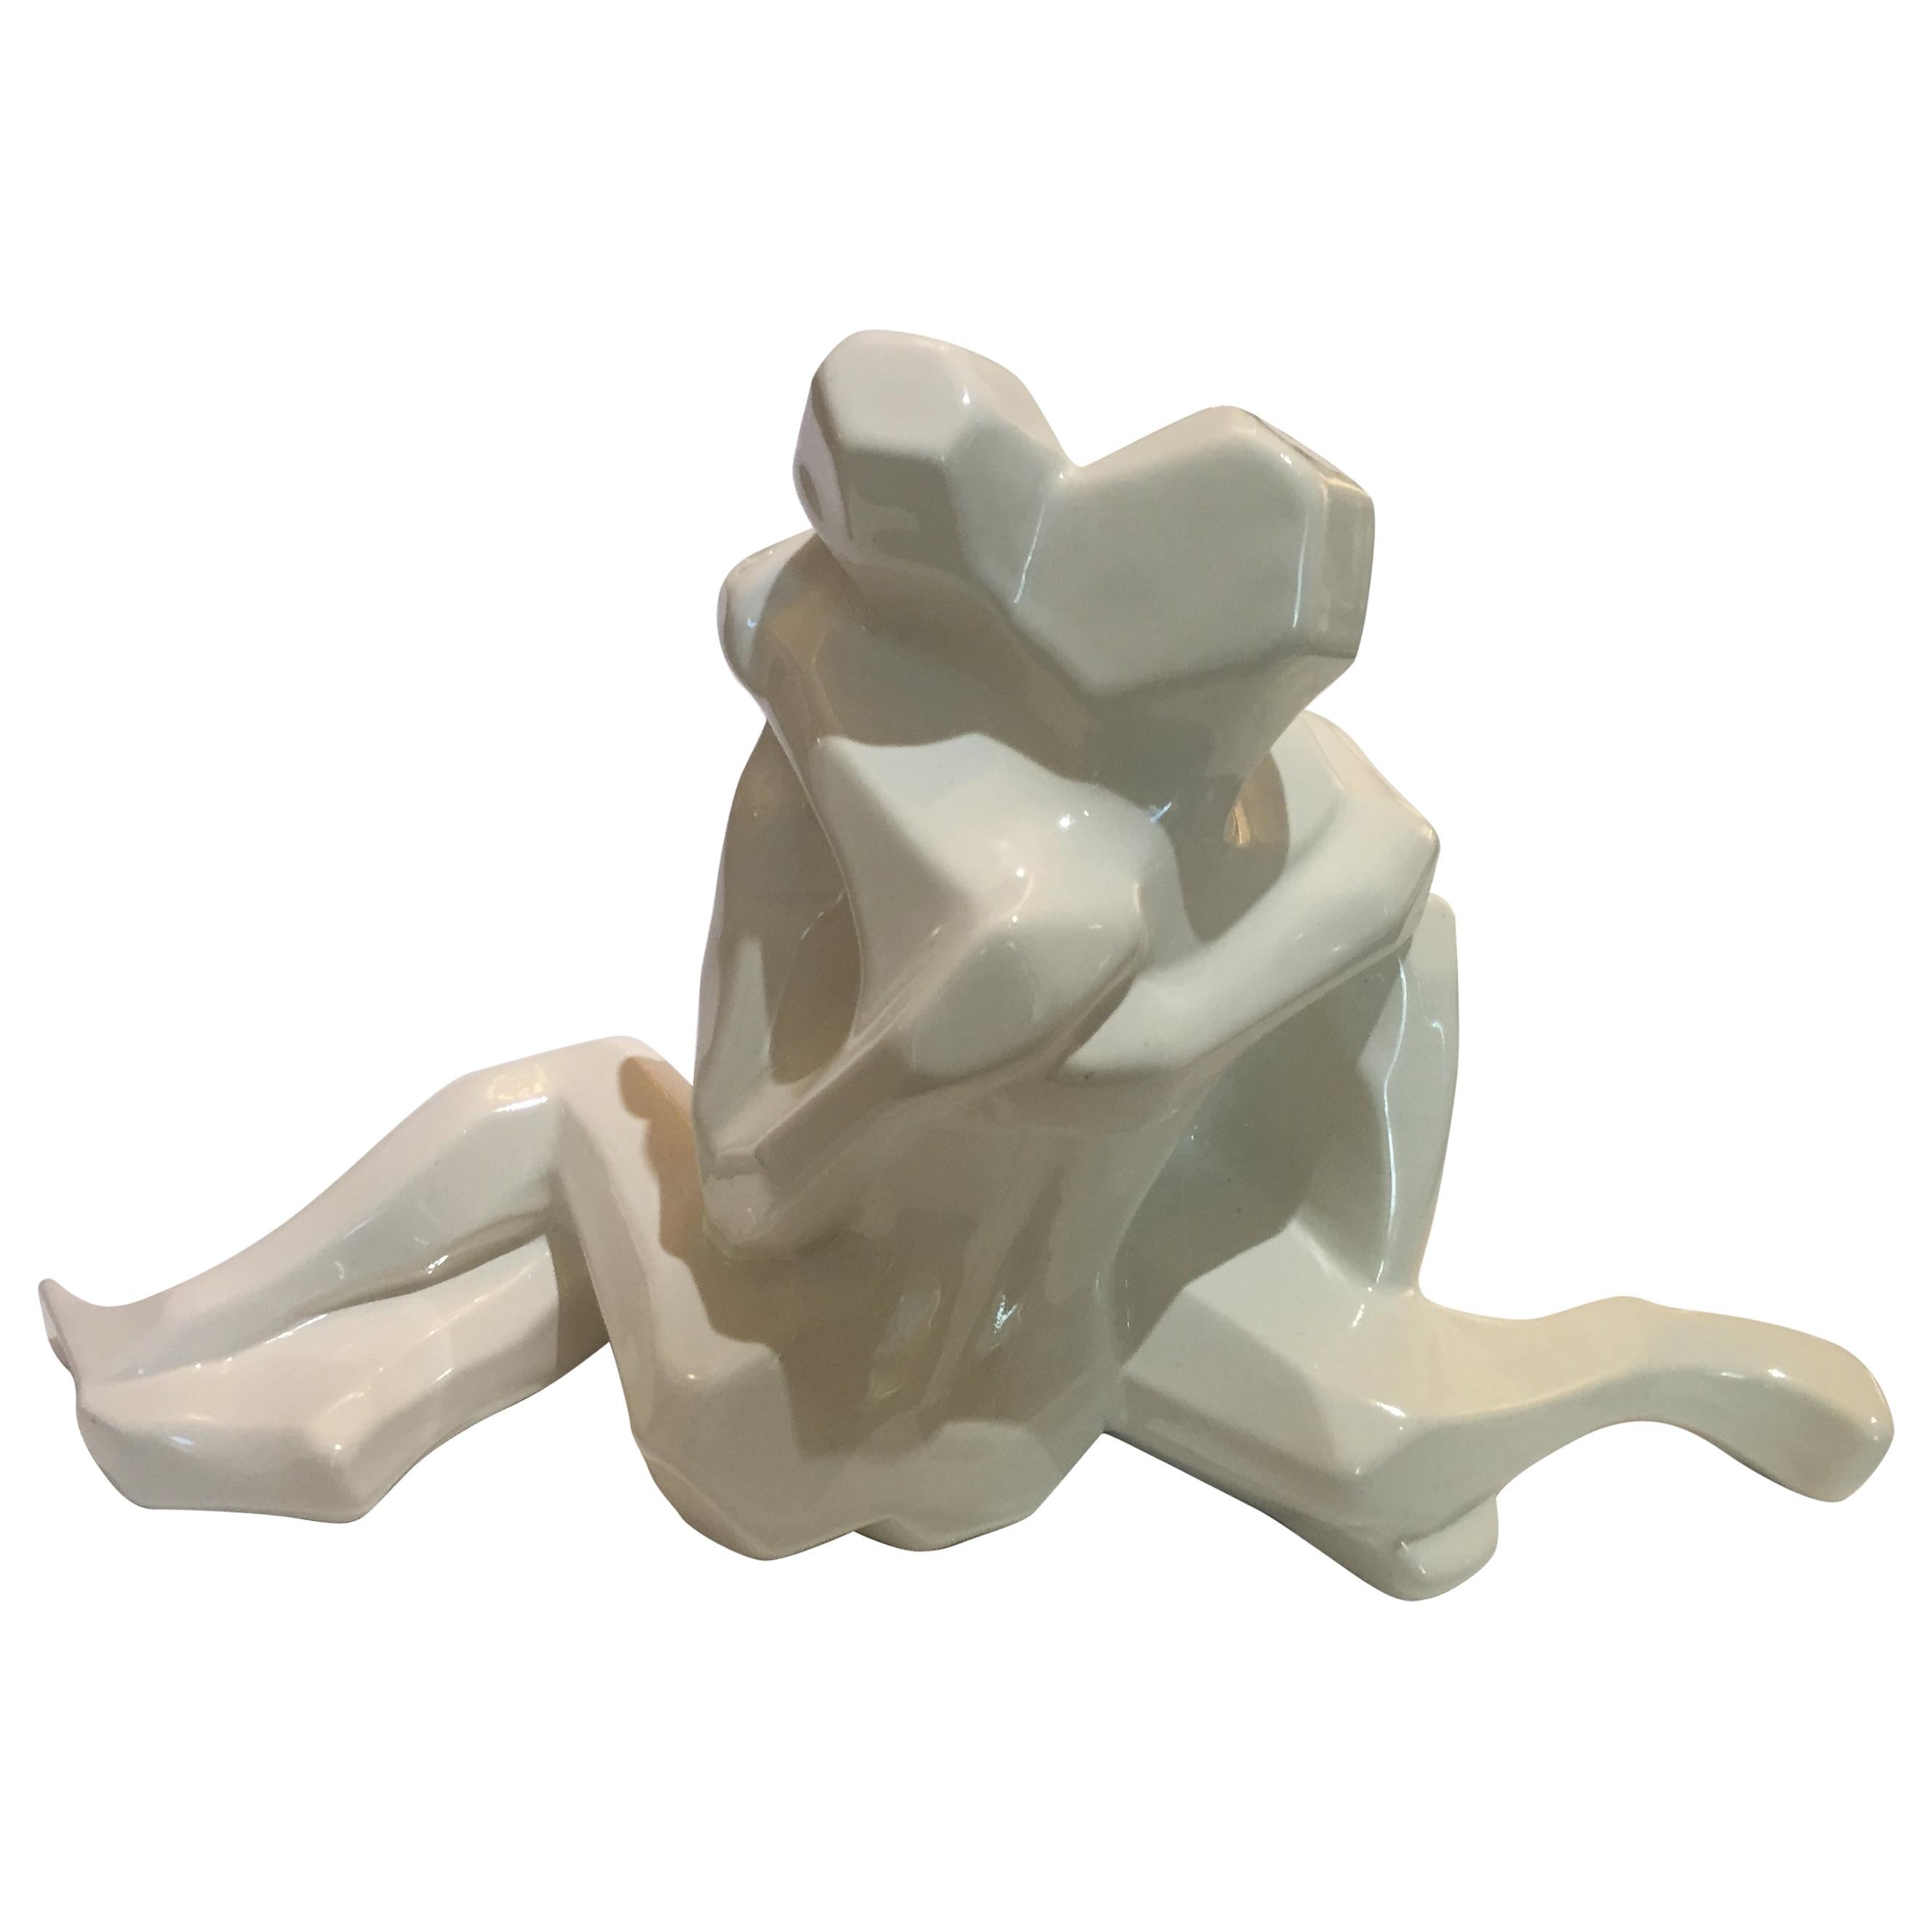 Jaru of California "Lovers Embrace" Figure in White Glazed Ceramic